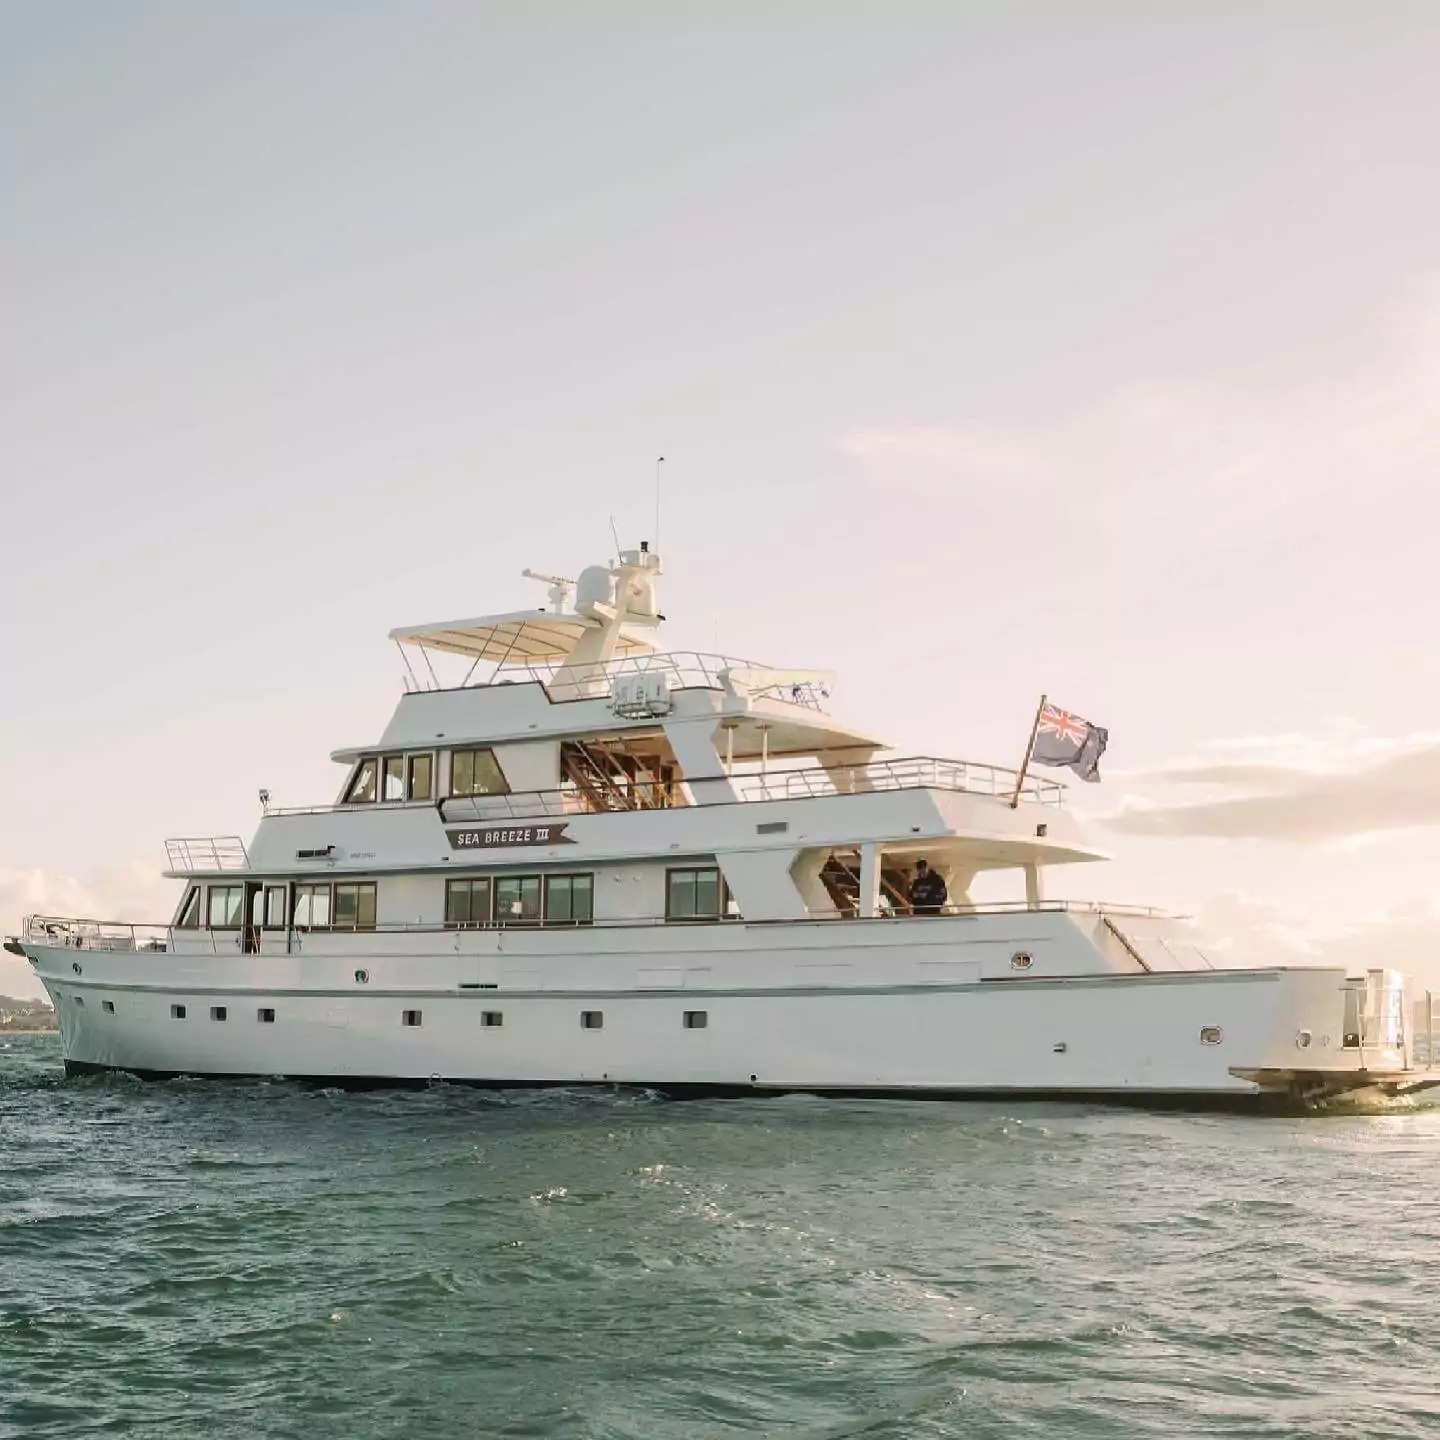 Seabreeze III luxury super yacht